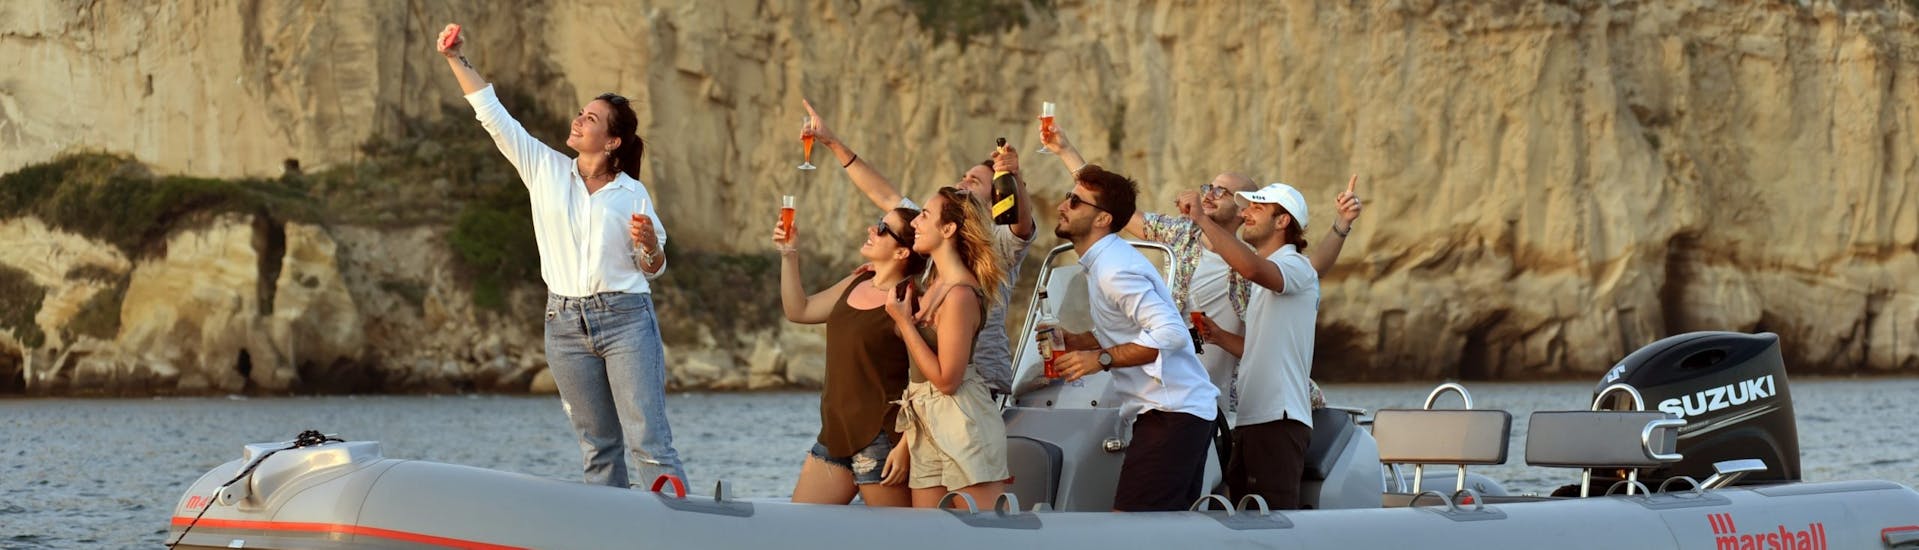 Mensen op de boot hebben plezier tijdens de RIB boottocht bij zonsondergang vanuit Napels langs de kust met aperitief georganiseerd door Seaside Napoli.